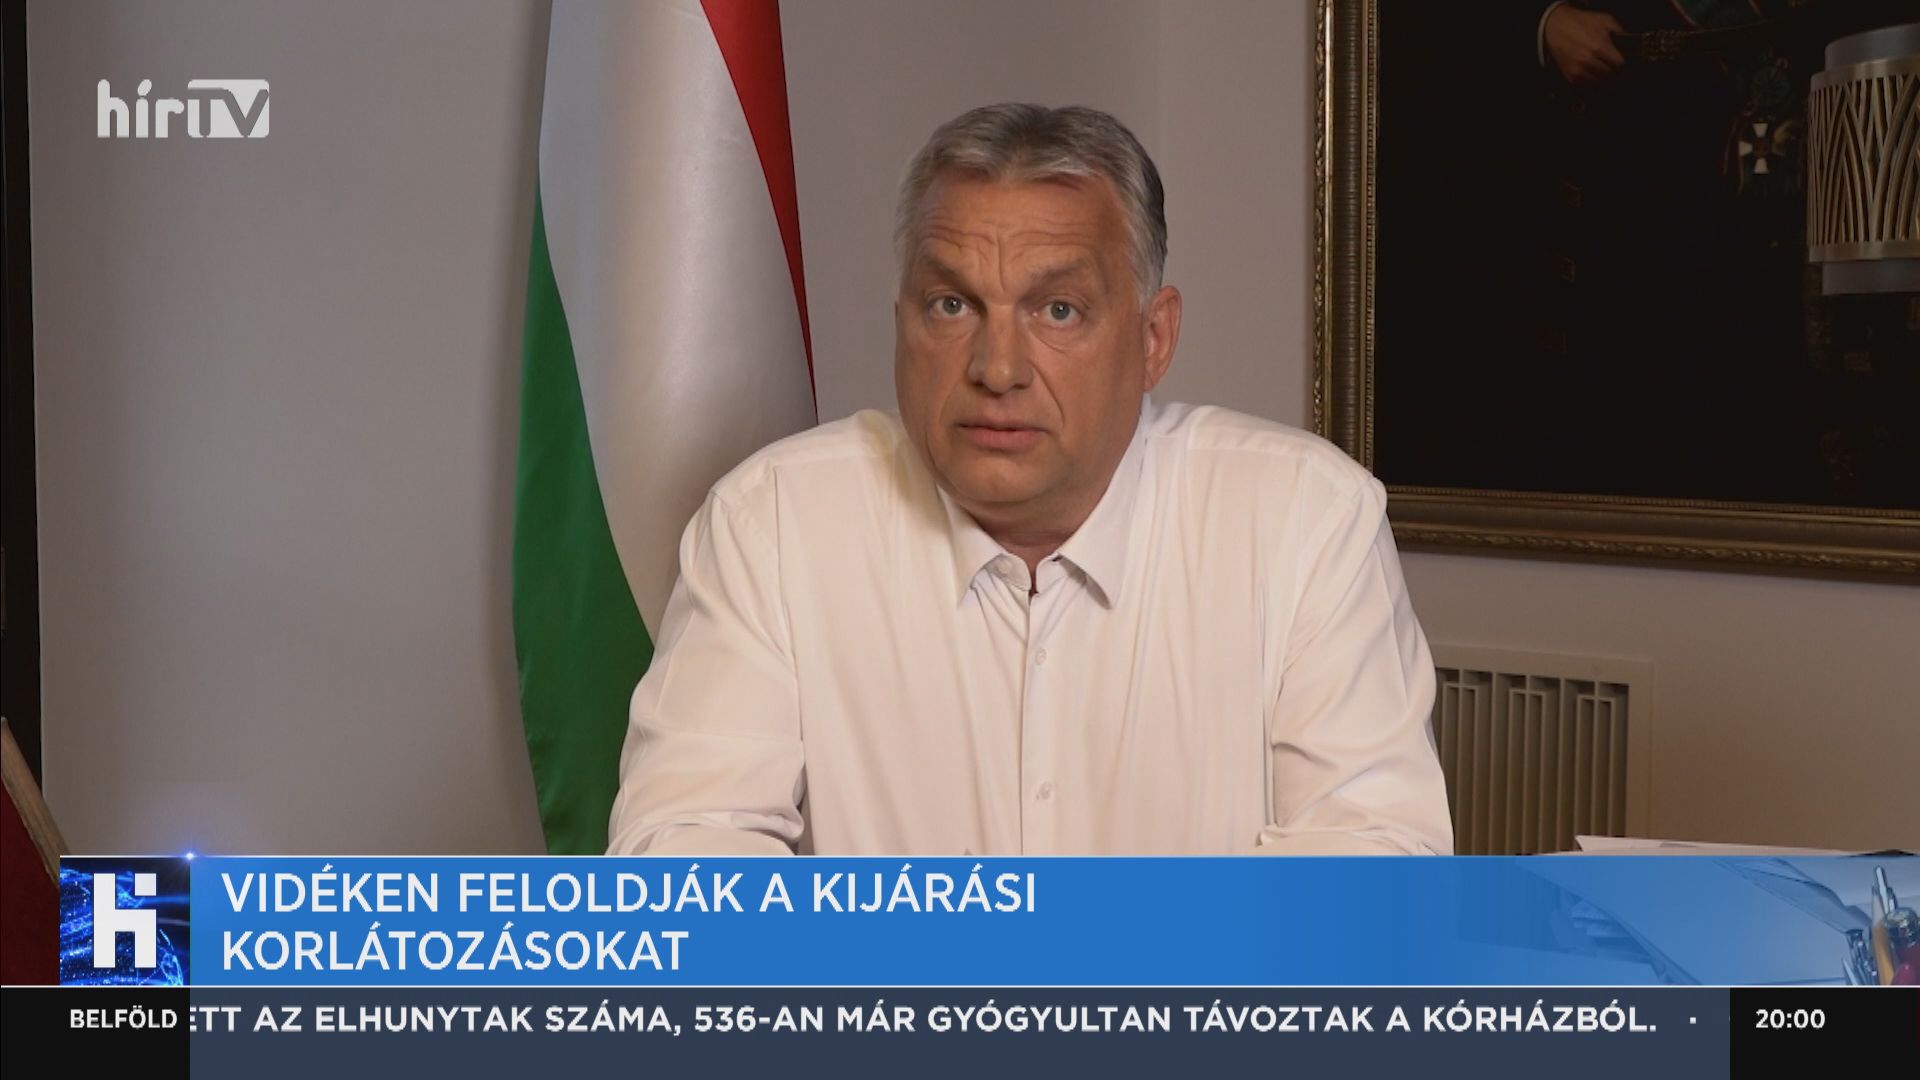  Orbán Viktor: Újraindul az élet Magyarországon